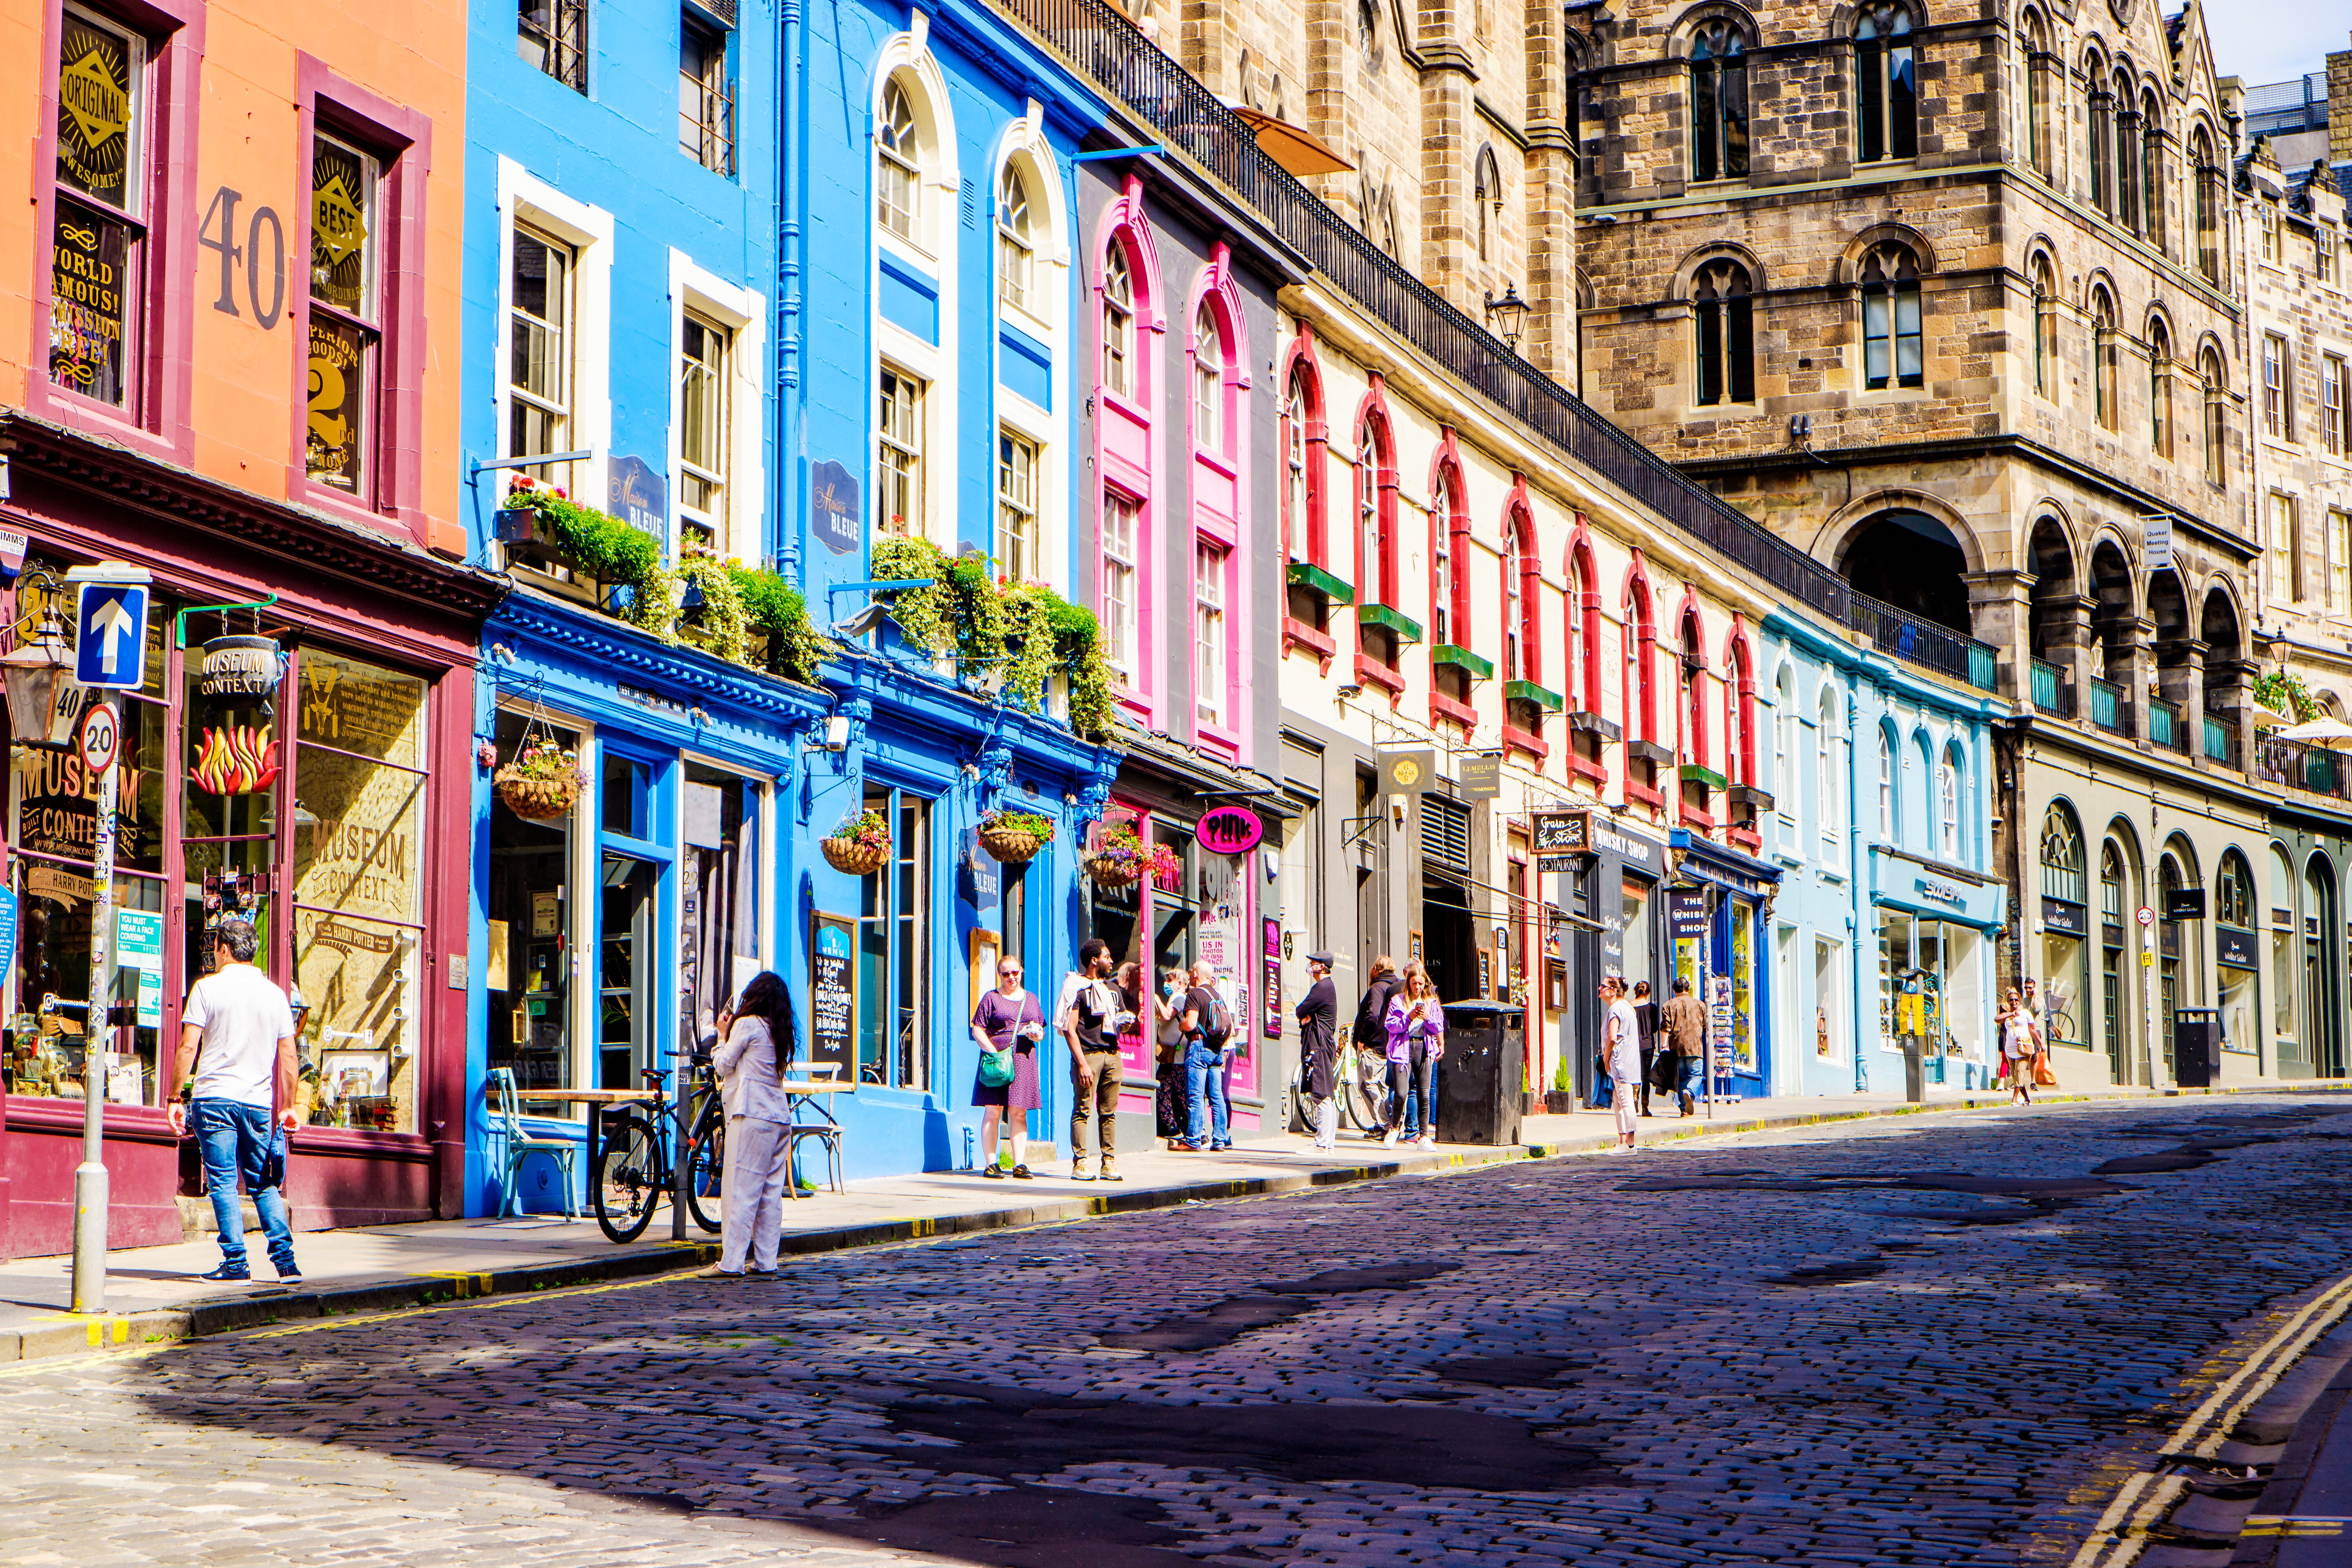 Edinburgh named top spot for UK hotel investment